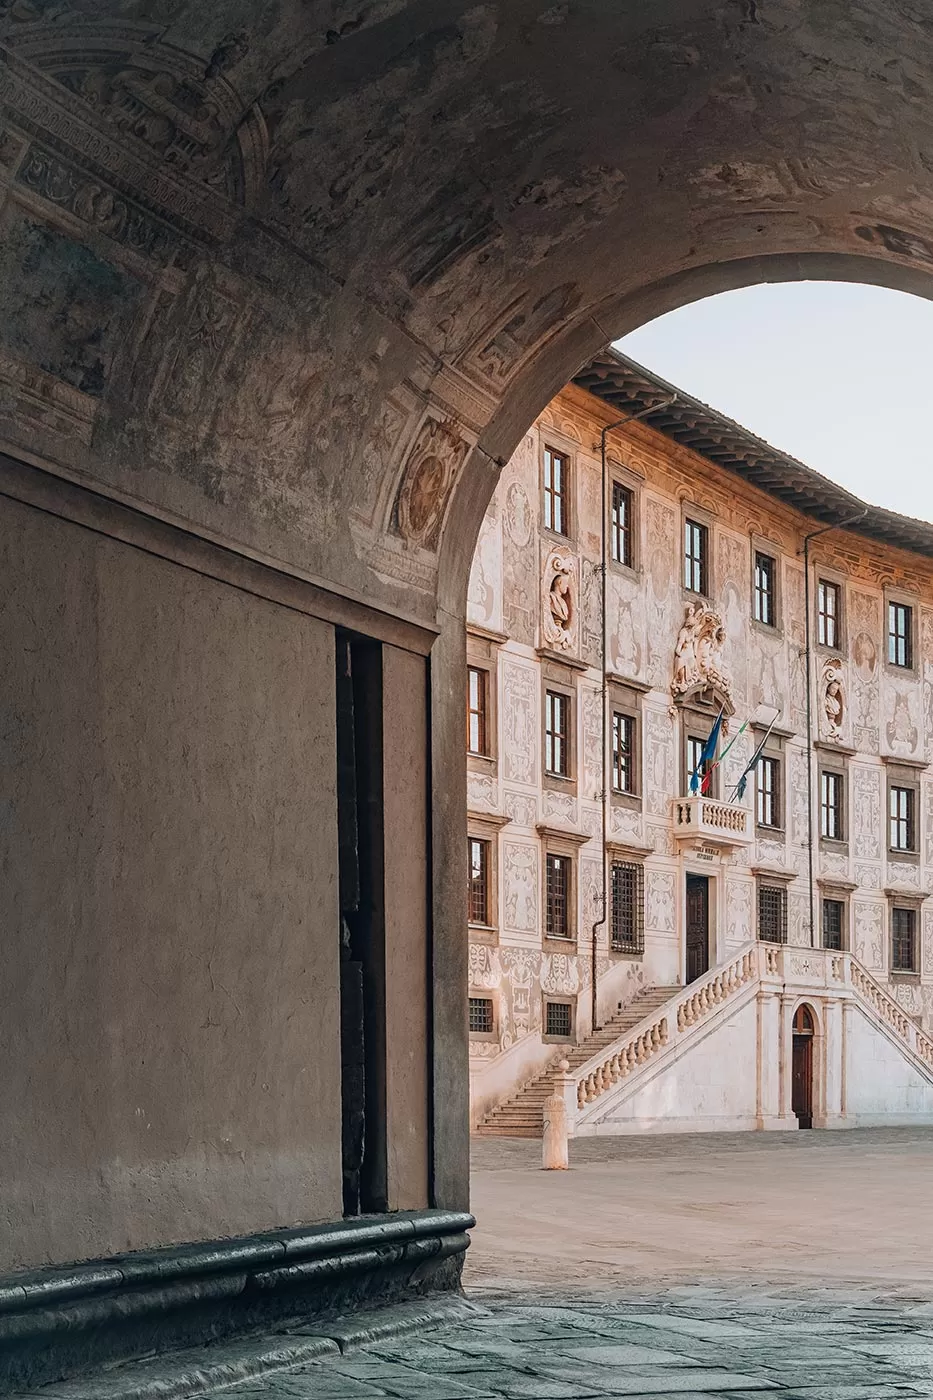 Things to do in Pisa Italy - Piazza dei Cavalieri - Palazzo dell'Orologio - Torre della Muda o della Fame